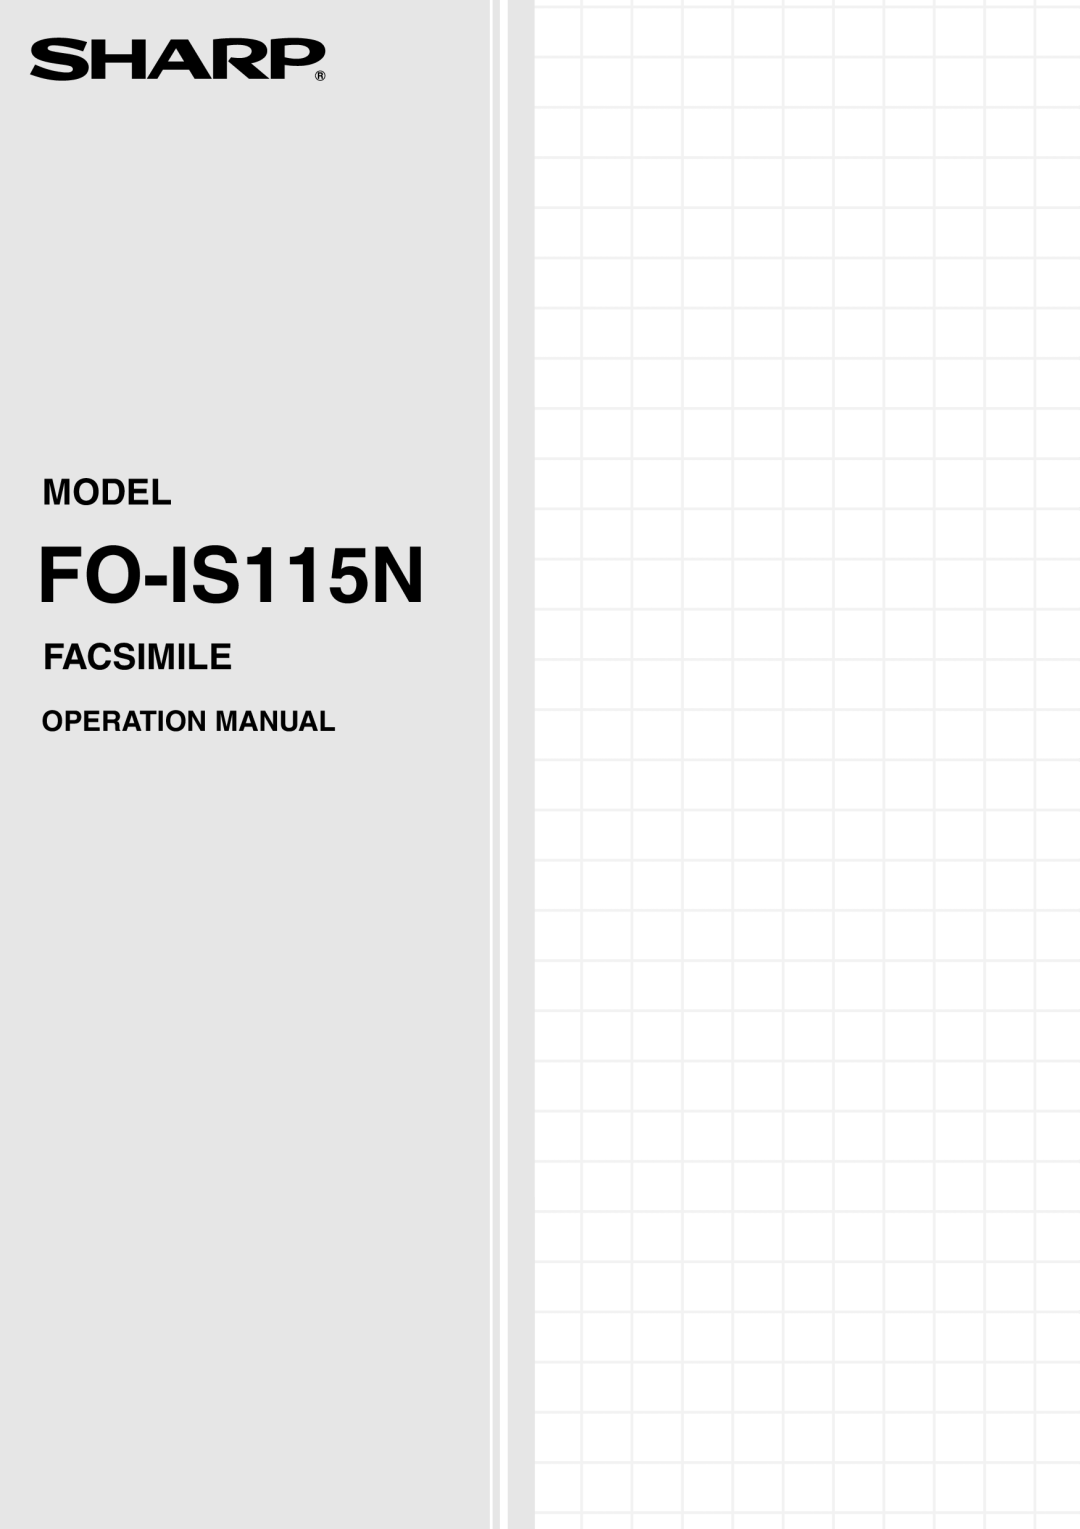 Sharp FO-IS115N operation manual Model, Facsimile 